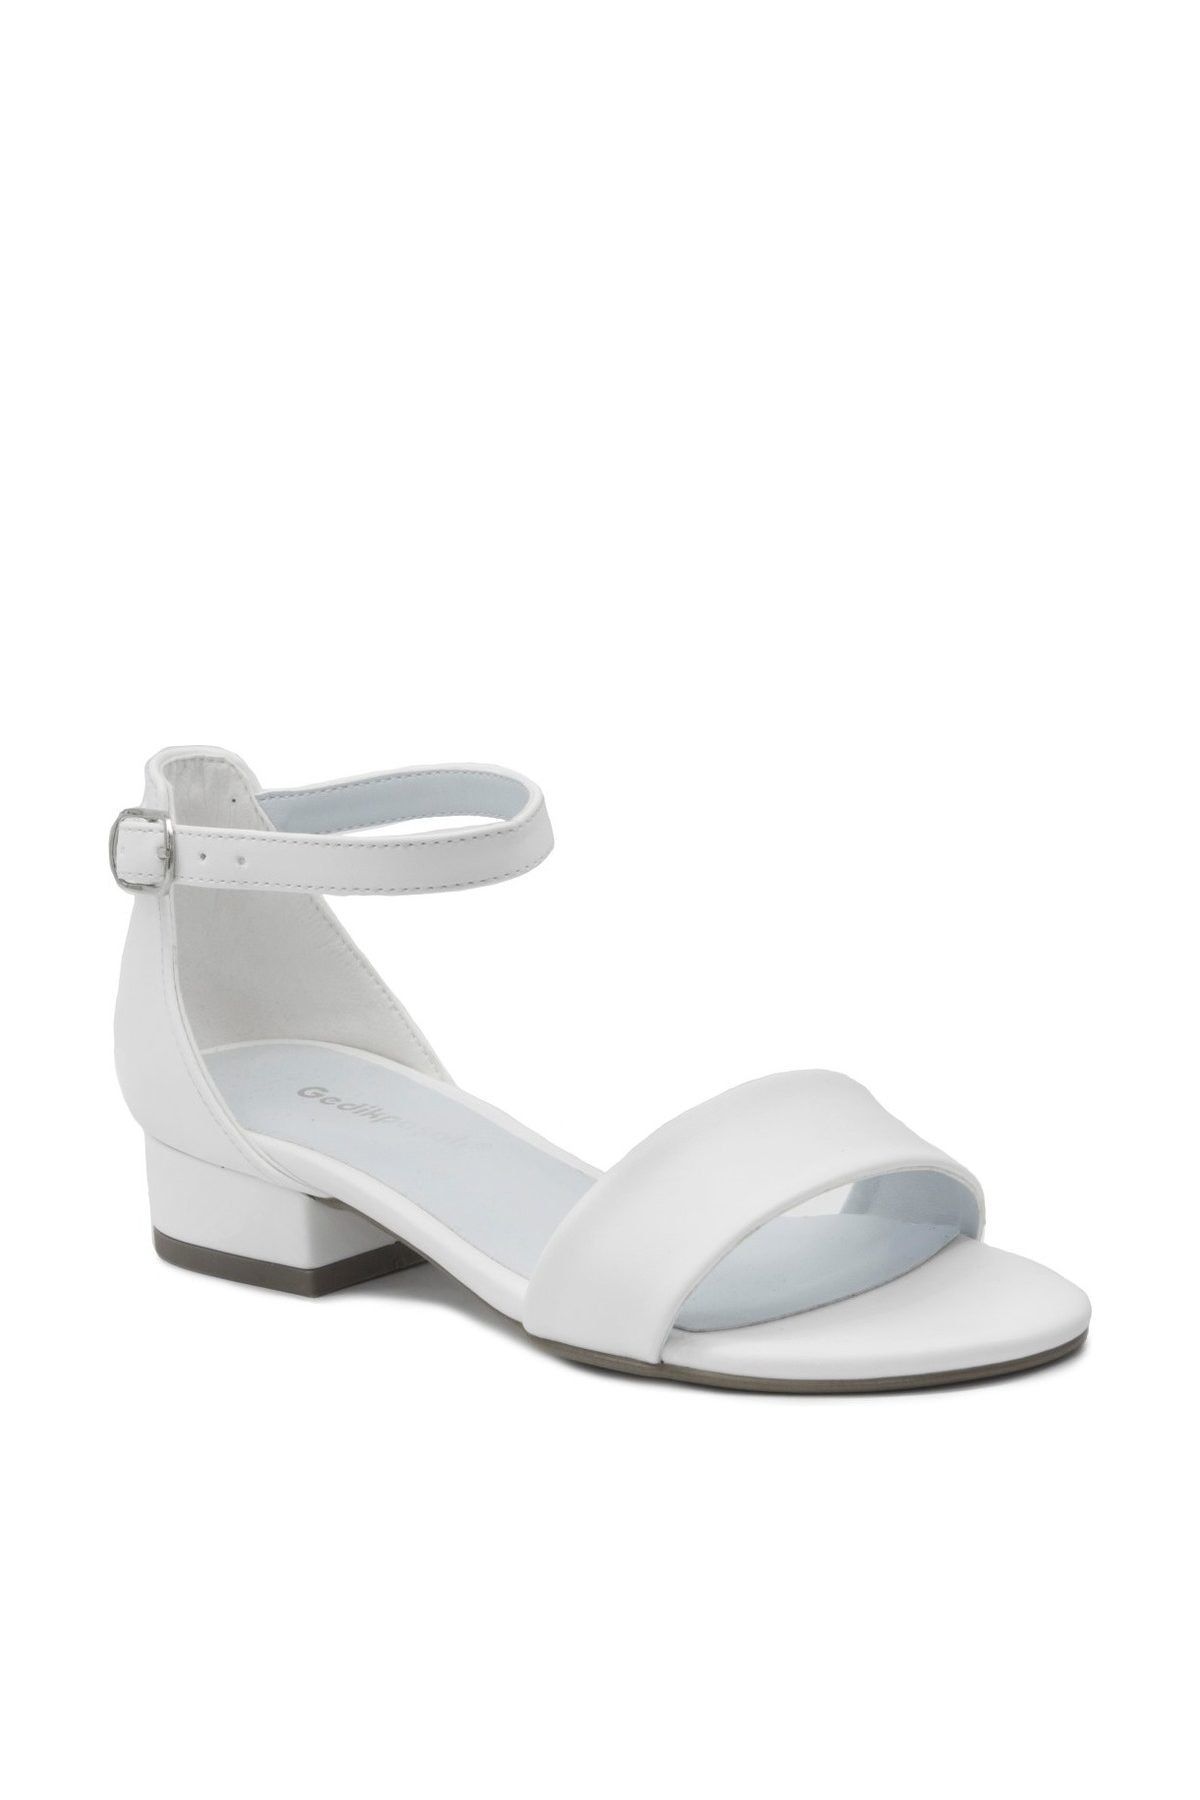 Gedikpaşalı Beyaz Kadın Klasik Topuklu Ayakkabı GDKPSL22368Y0230000